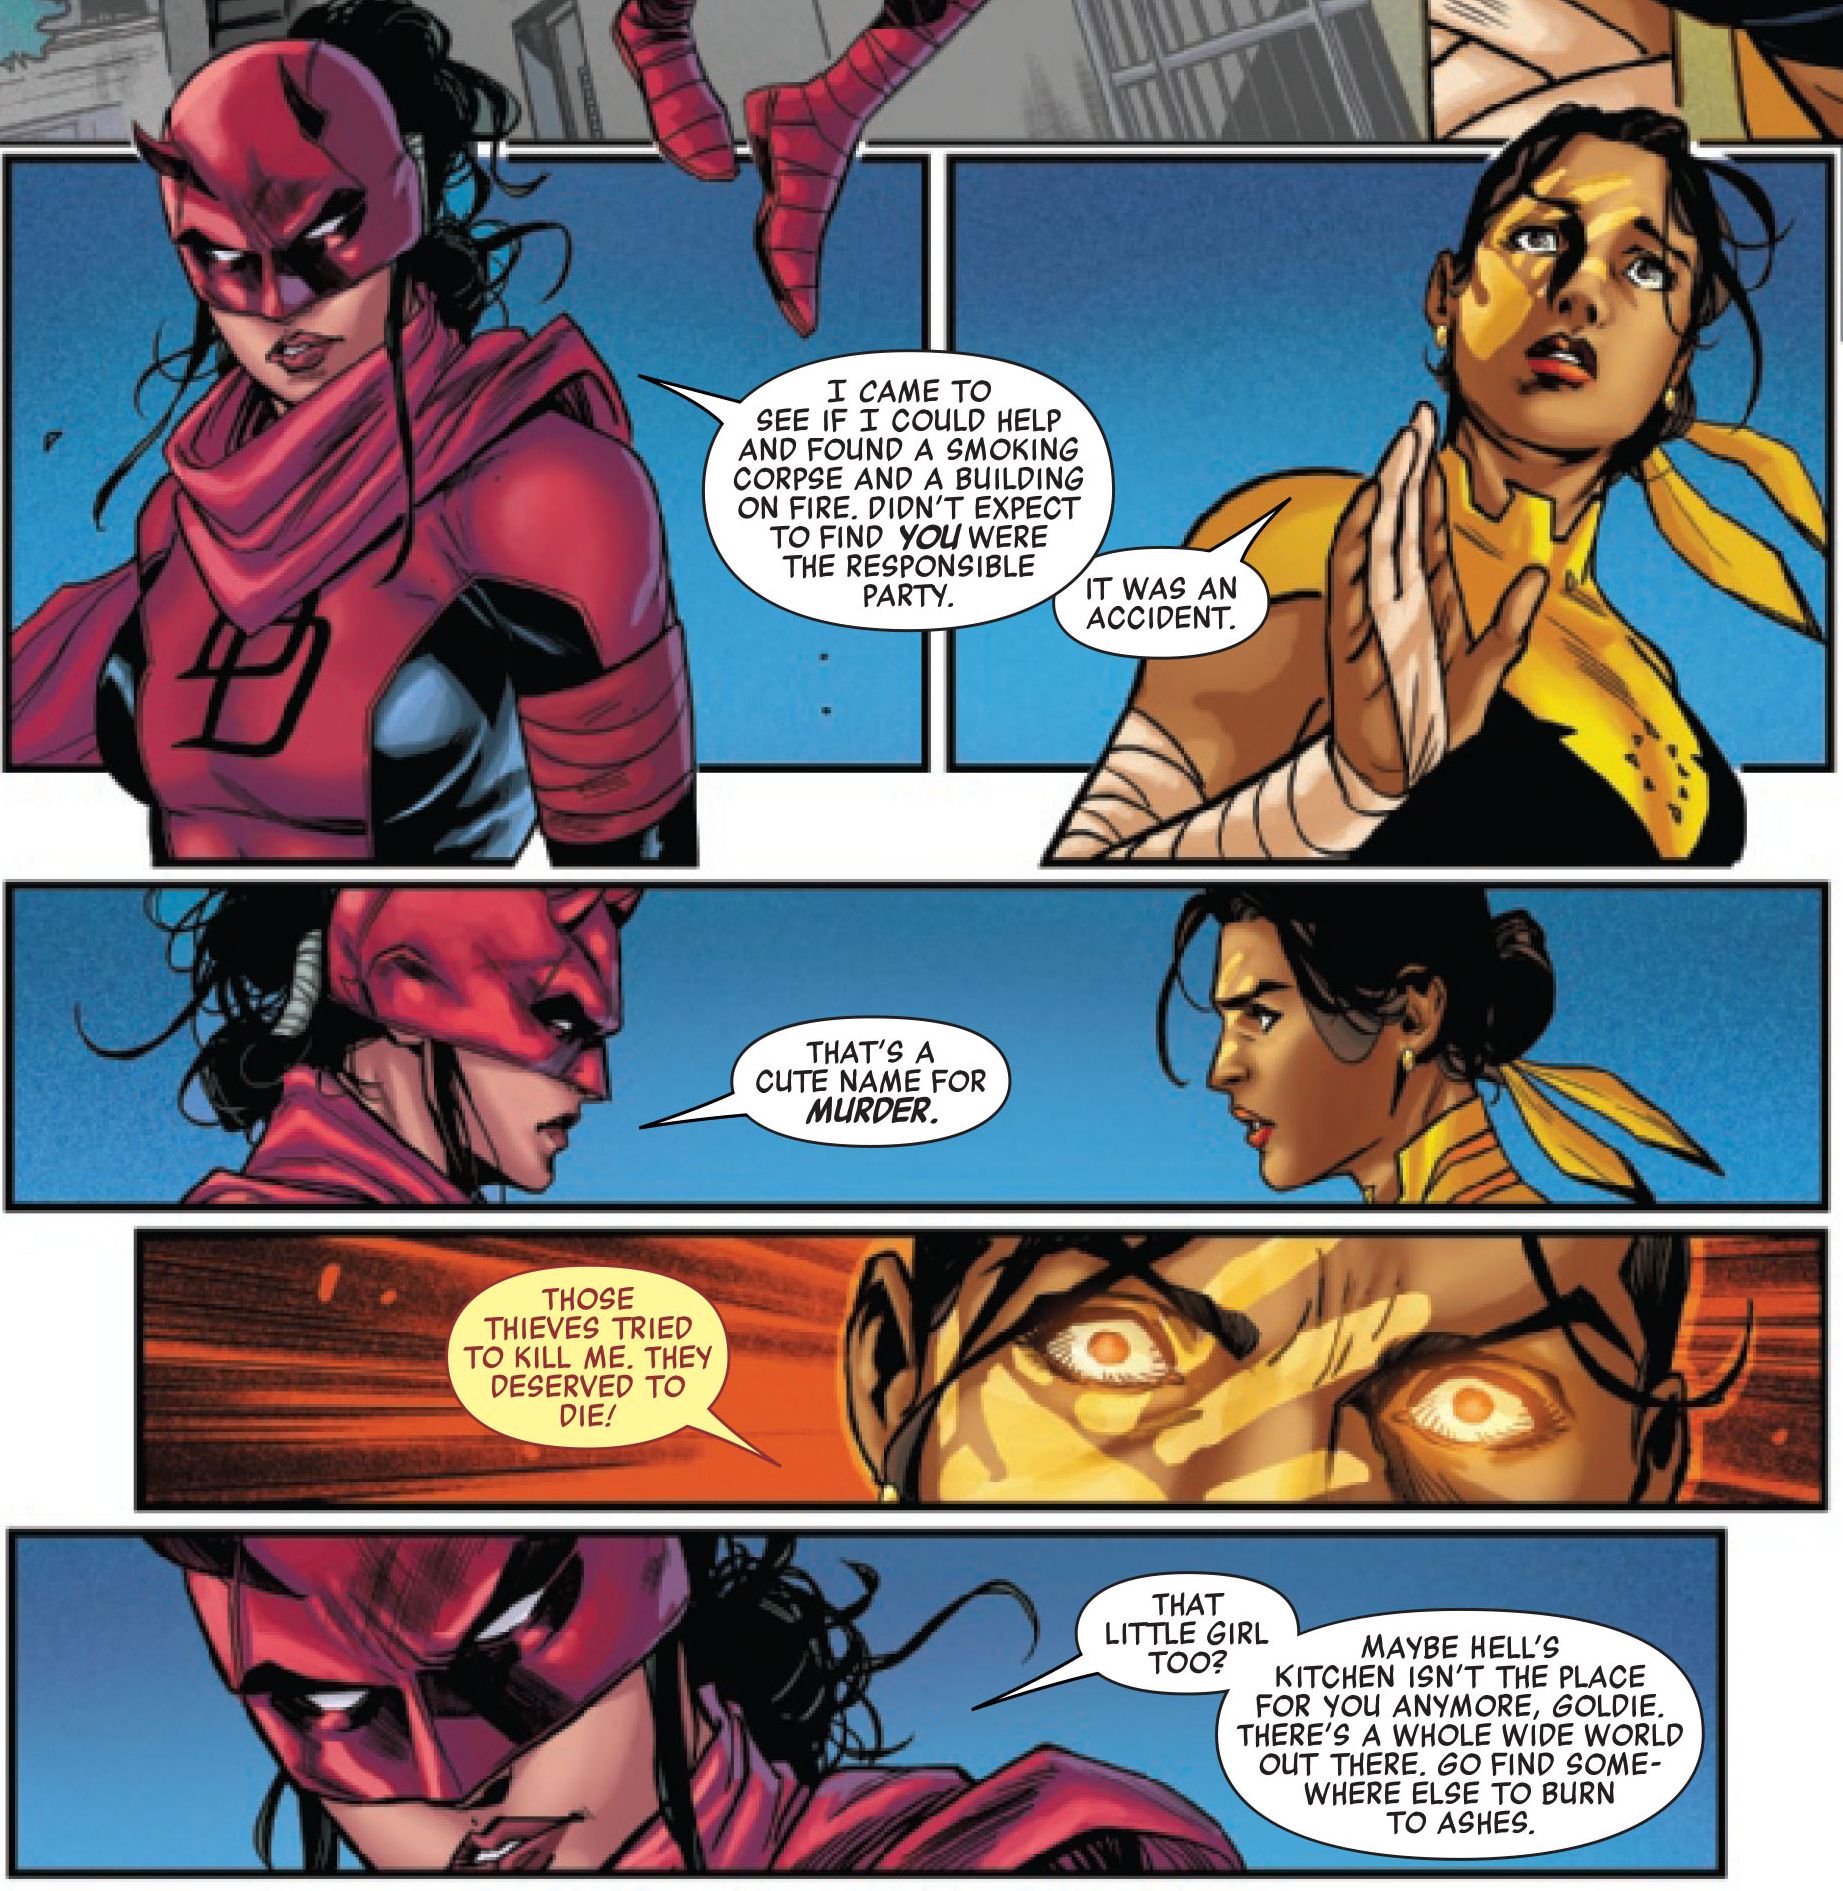 Elektra and Echo argue